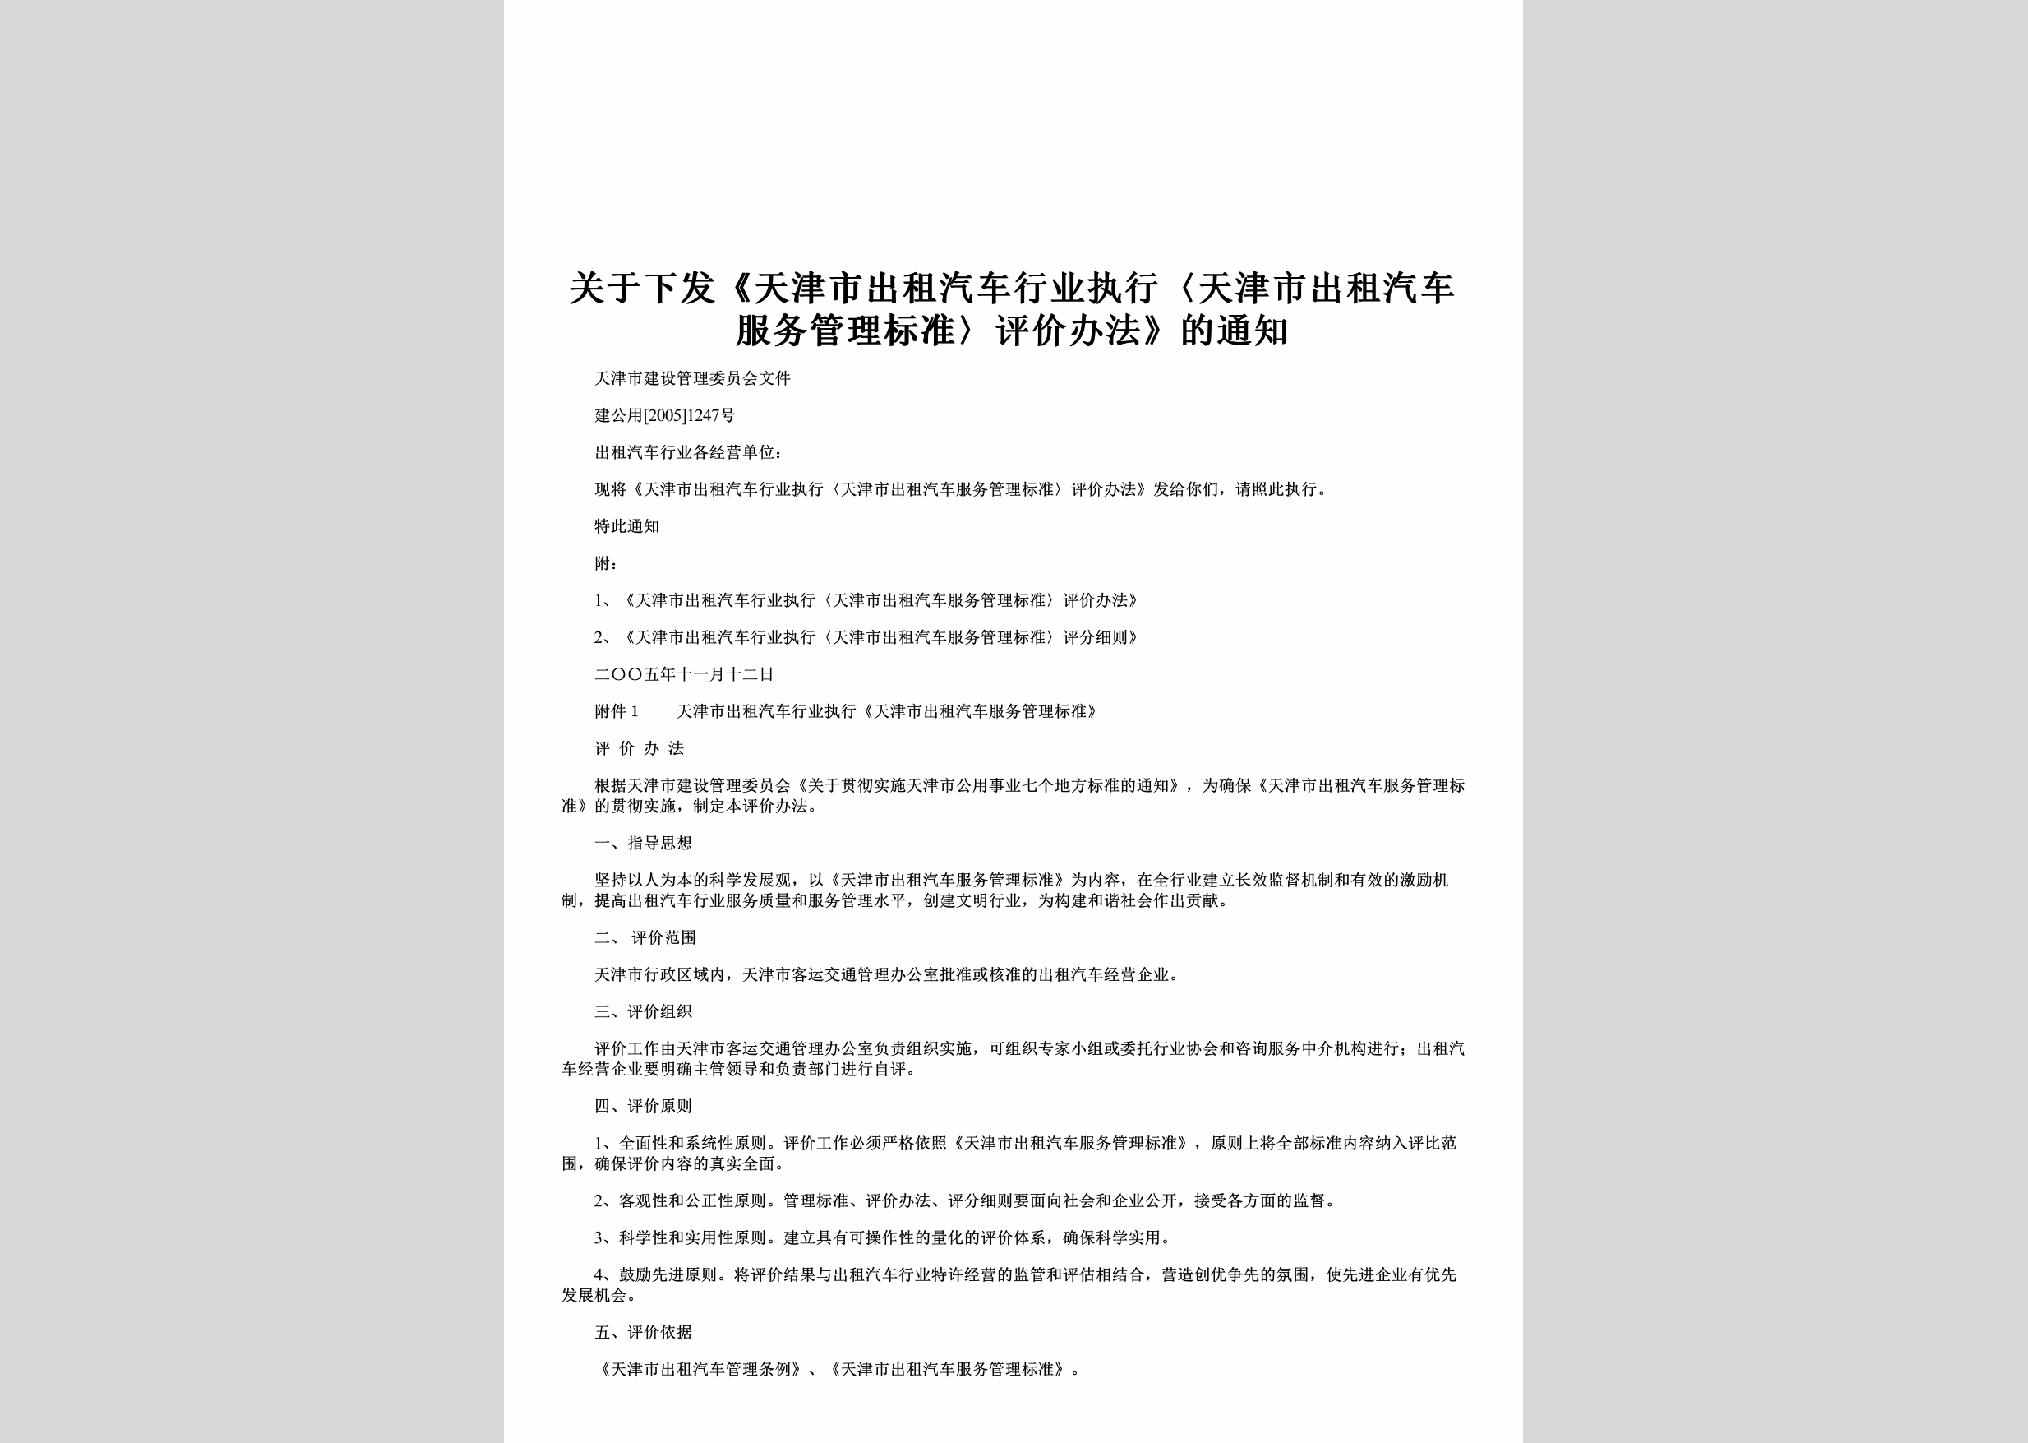 建公用[2005]1247号：关于下发《天津市出租汽车行业执行〈天津市出租汽车服务管理标准〉评价办法》的通知